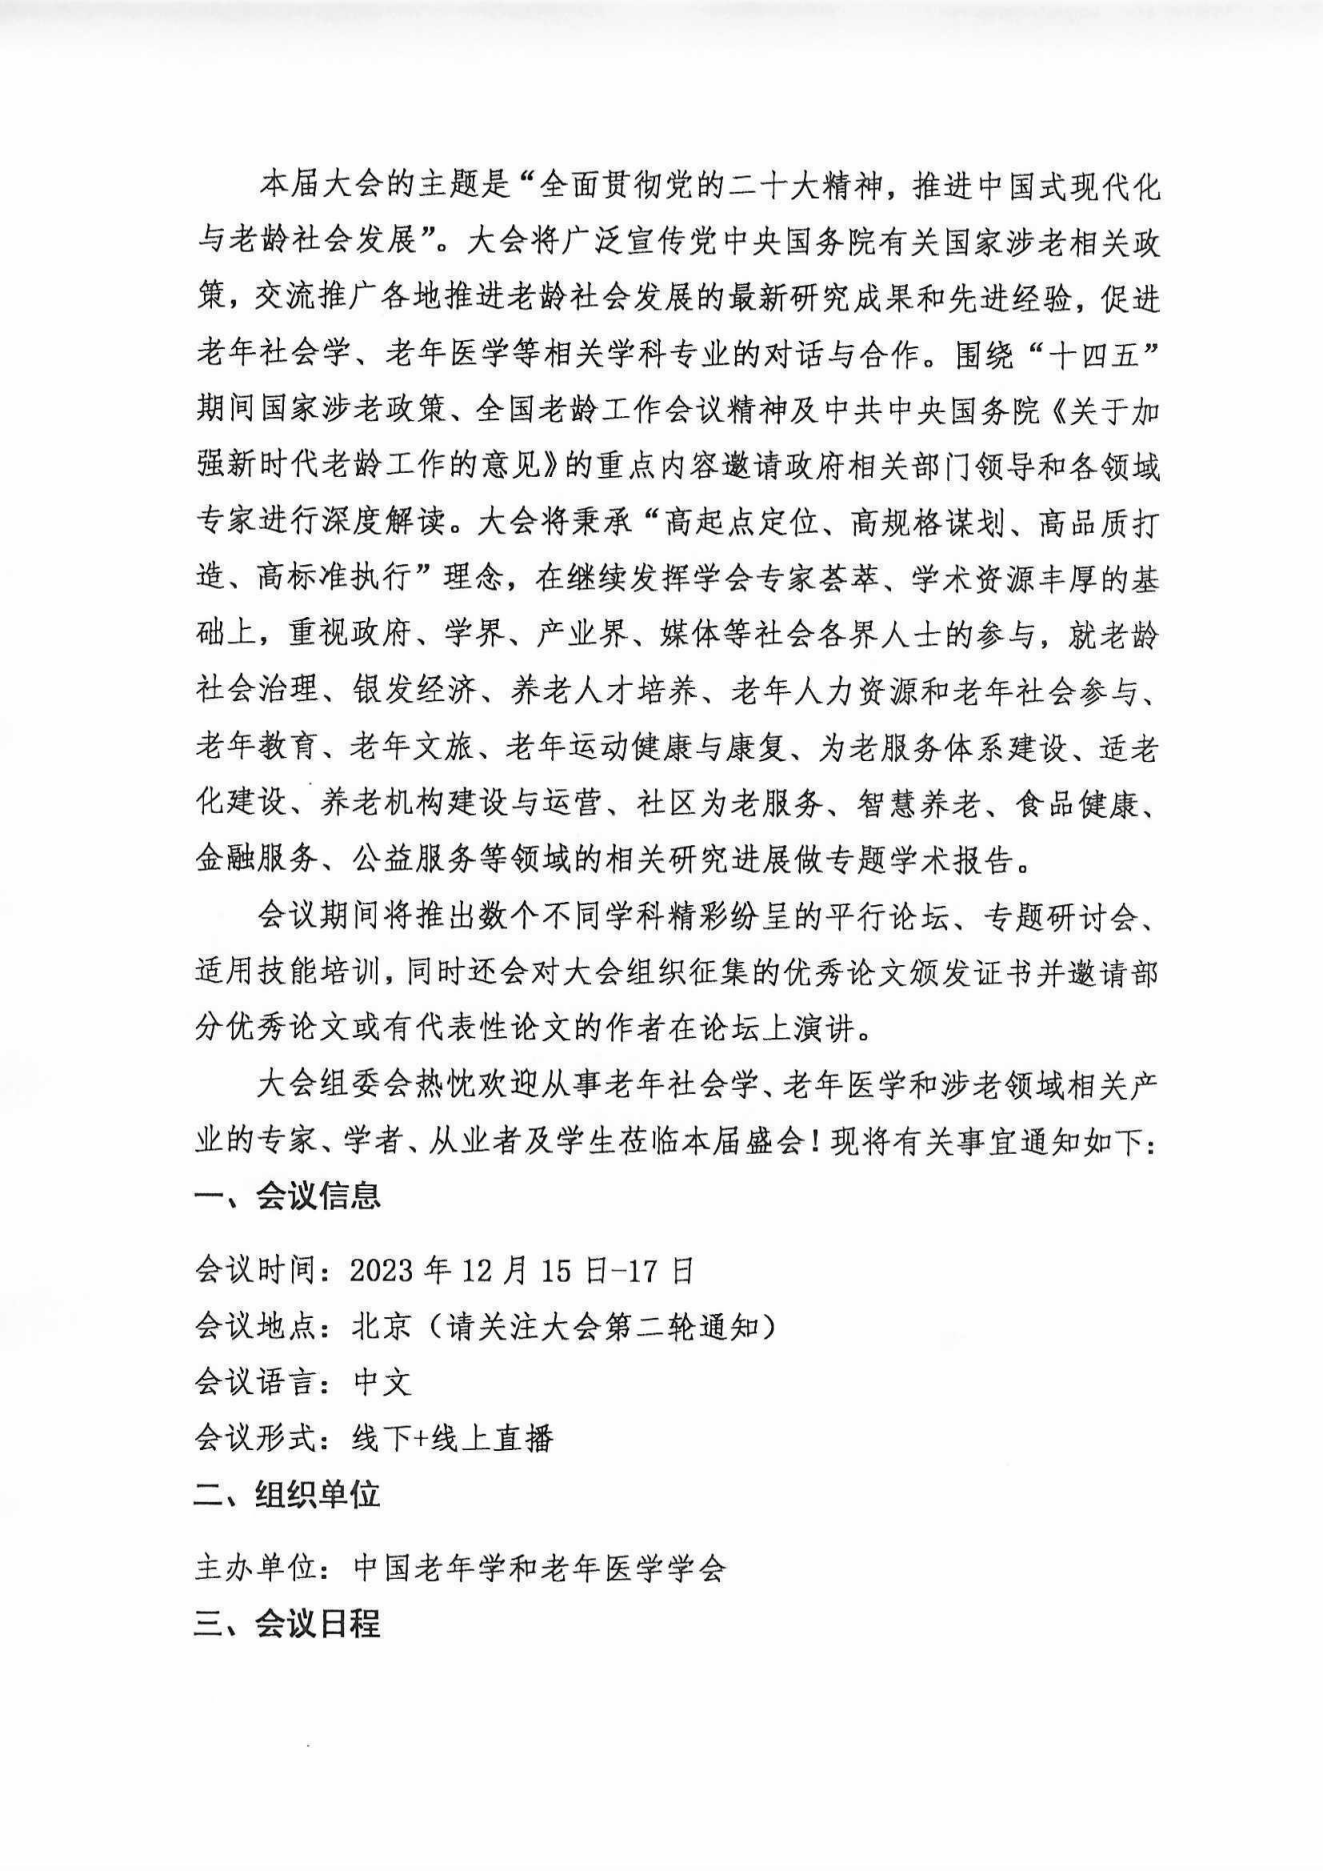 2023中国老龄社会发展大会（盖章件）2023年9月8日_01.png